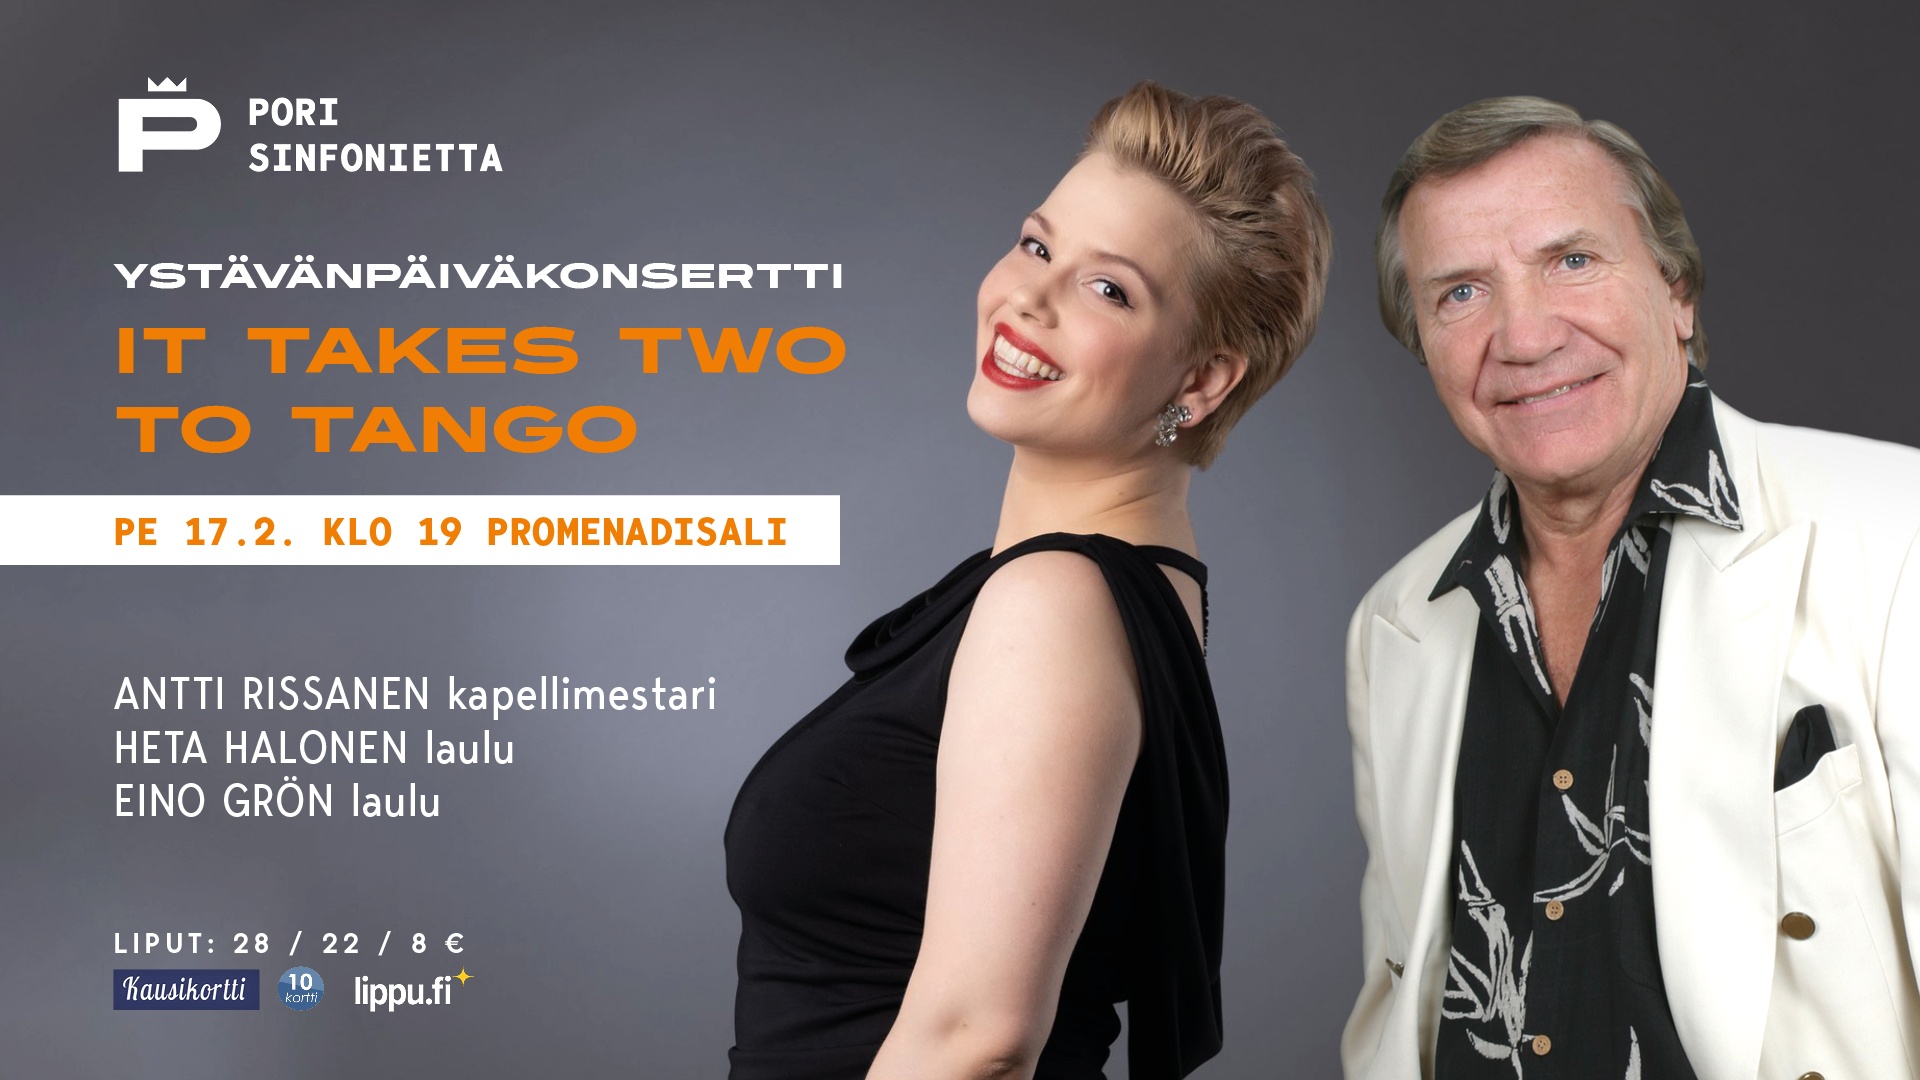 Ystävänpäiväkonsertti: It takes two to tango